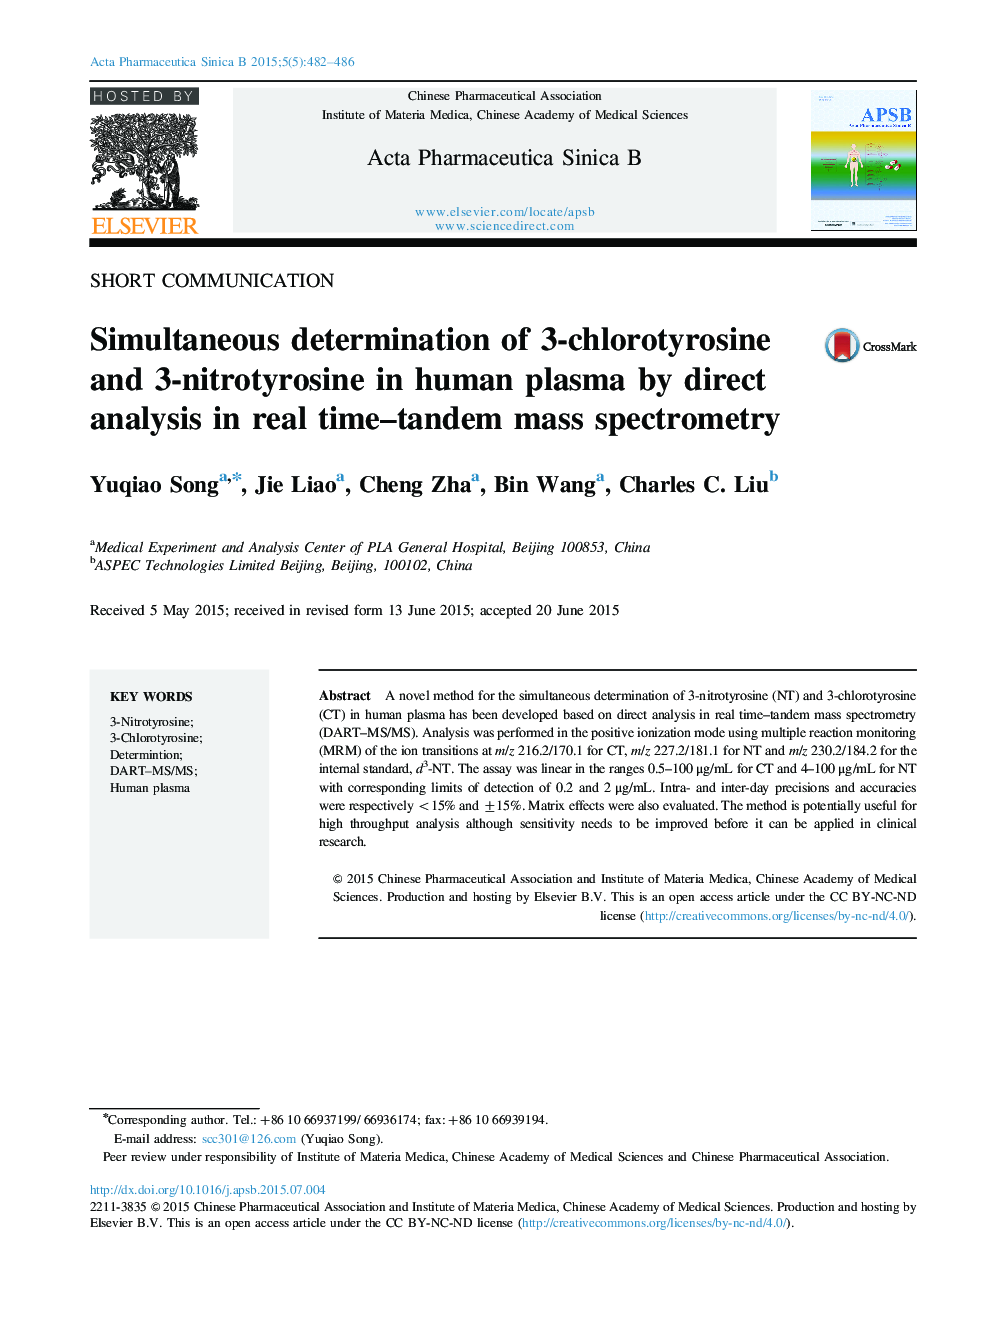 تعیین همزمان 3-کلروتیروسین و 3-نیتروتیروسین در پلاسمای انسانی با استفاده از آنالیز مستقیم در طیف سنجی جرمی زمان واقعی 